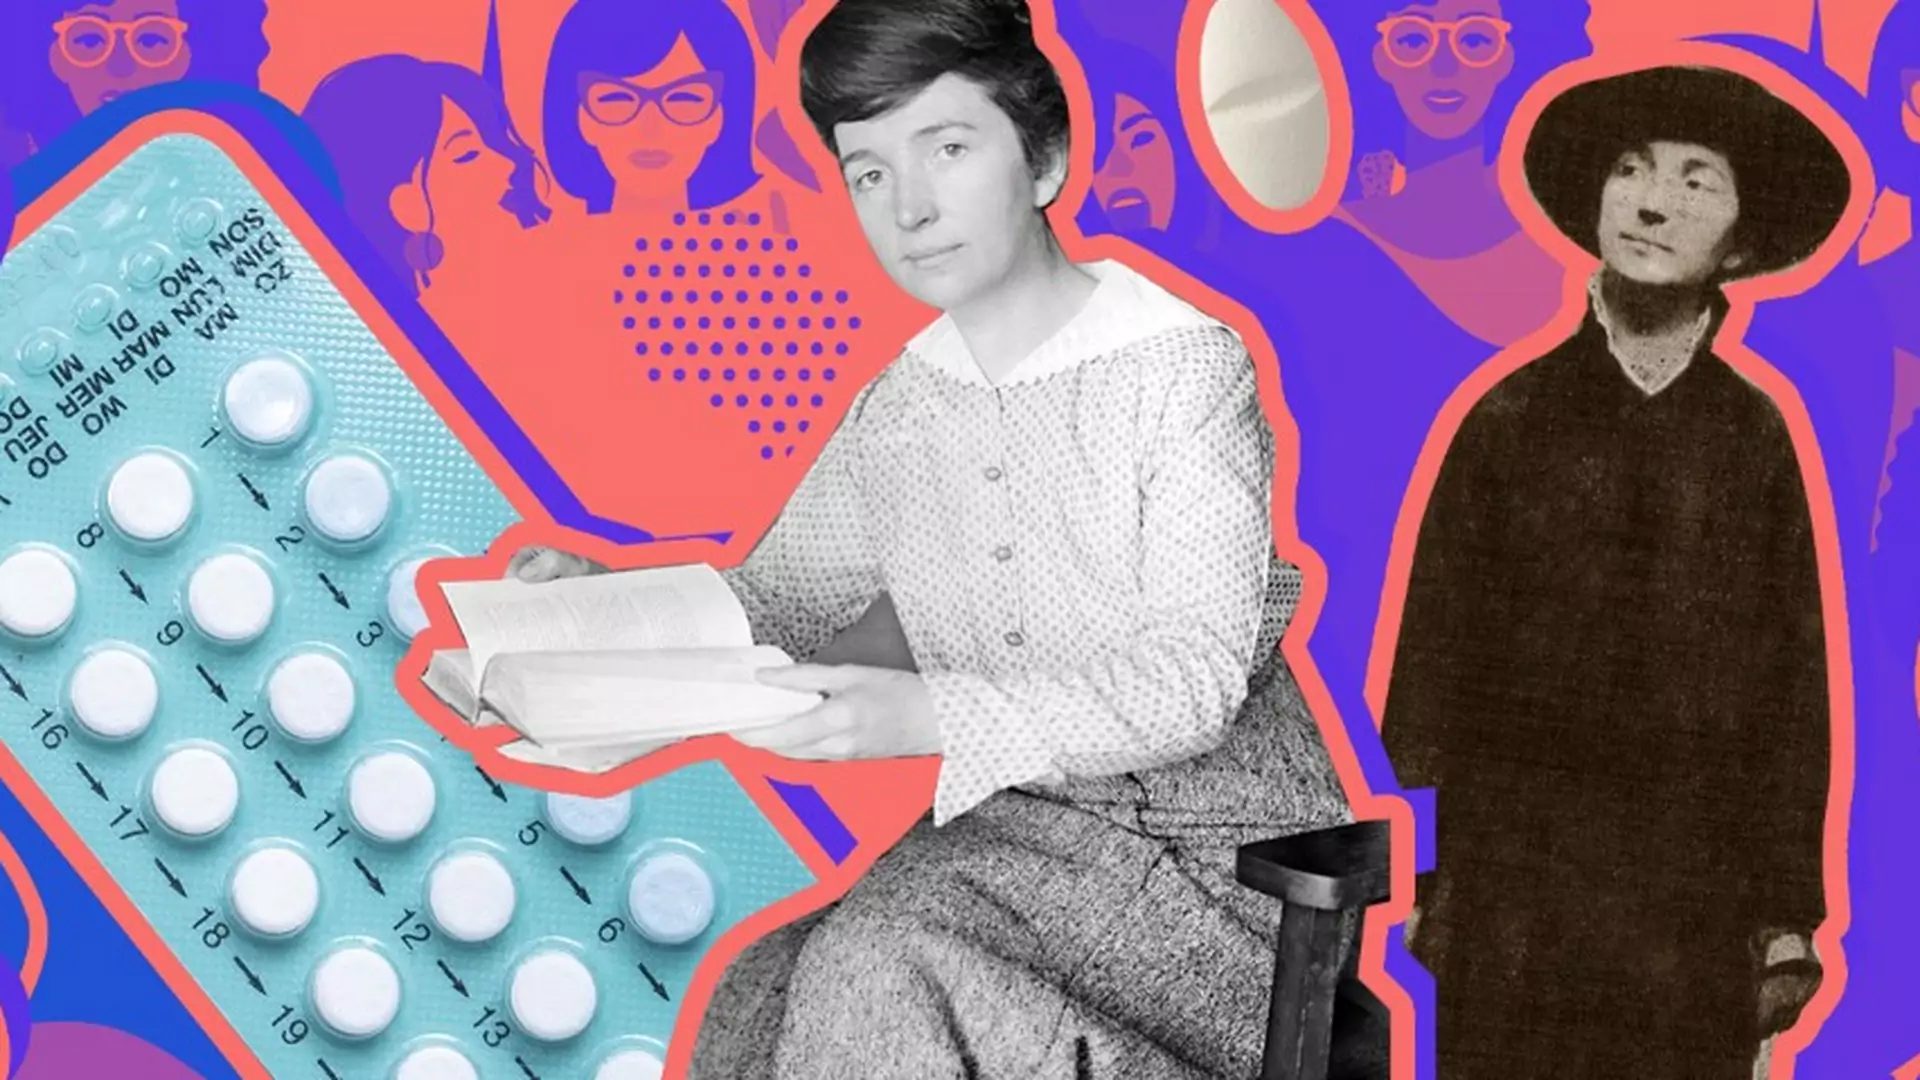 Margaret Sanger dała kobietom wybór i wolność seksualną. Poznajcie matkę pigułki antykoncepcyjnej